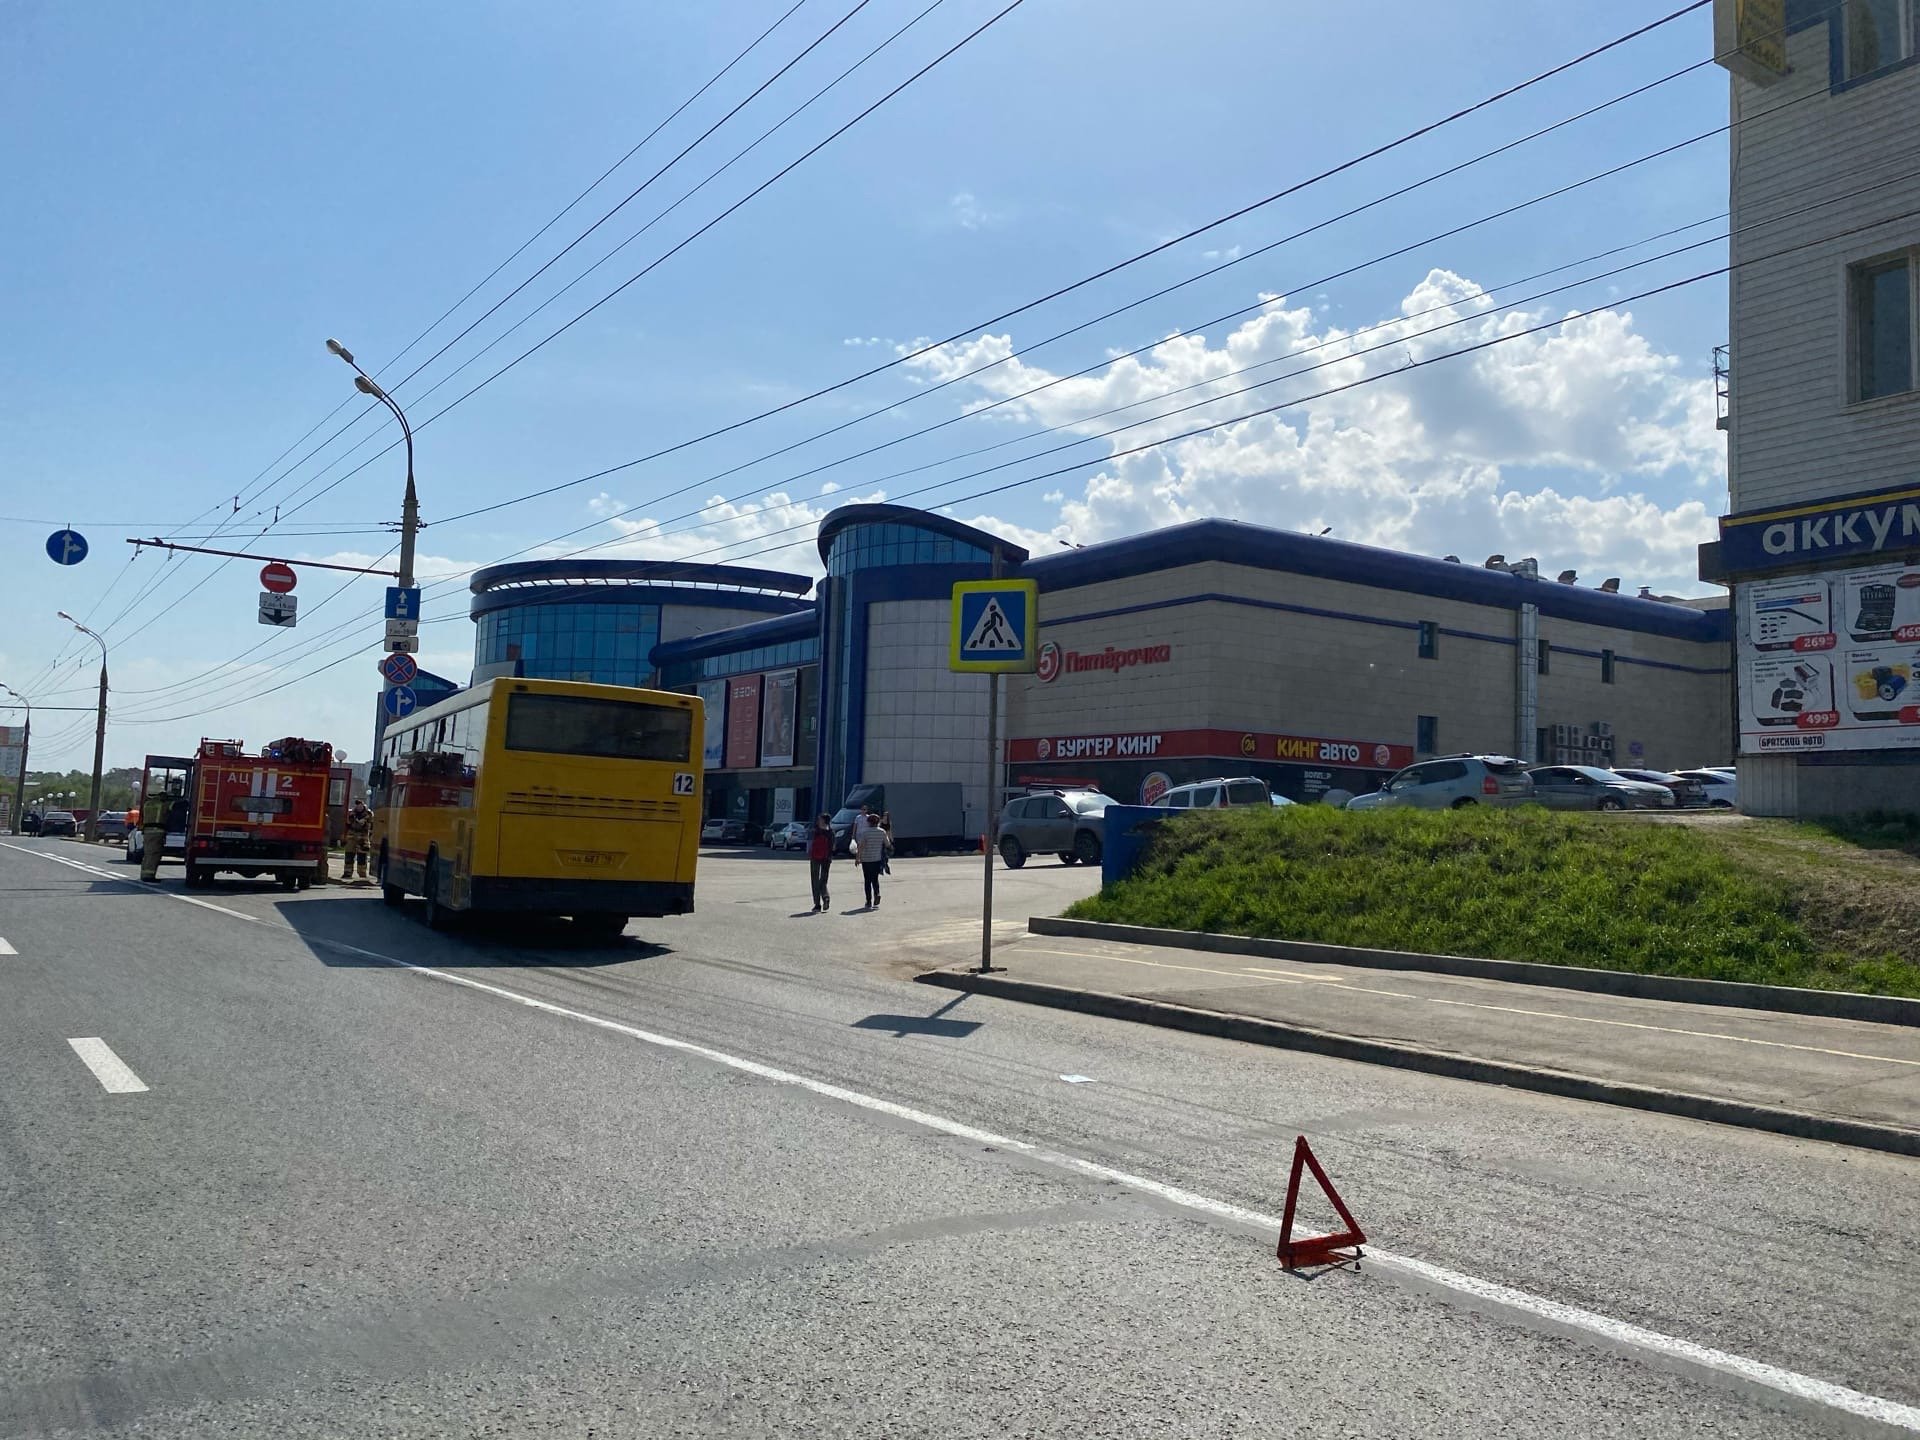 

Четыре человека пострадали в аварии с автобусом вблизи ТЦ «Флагман» в Ижевске

